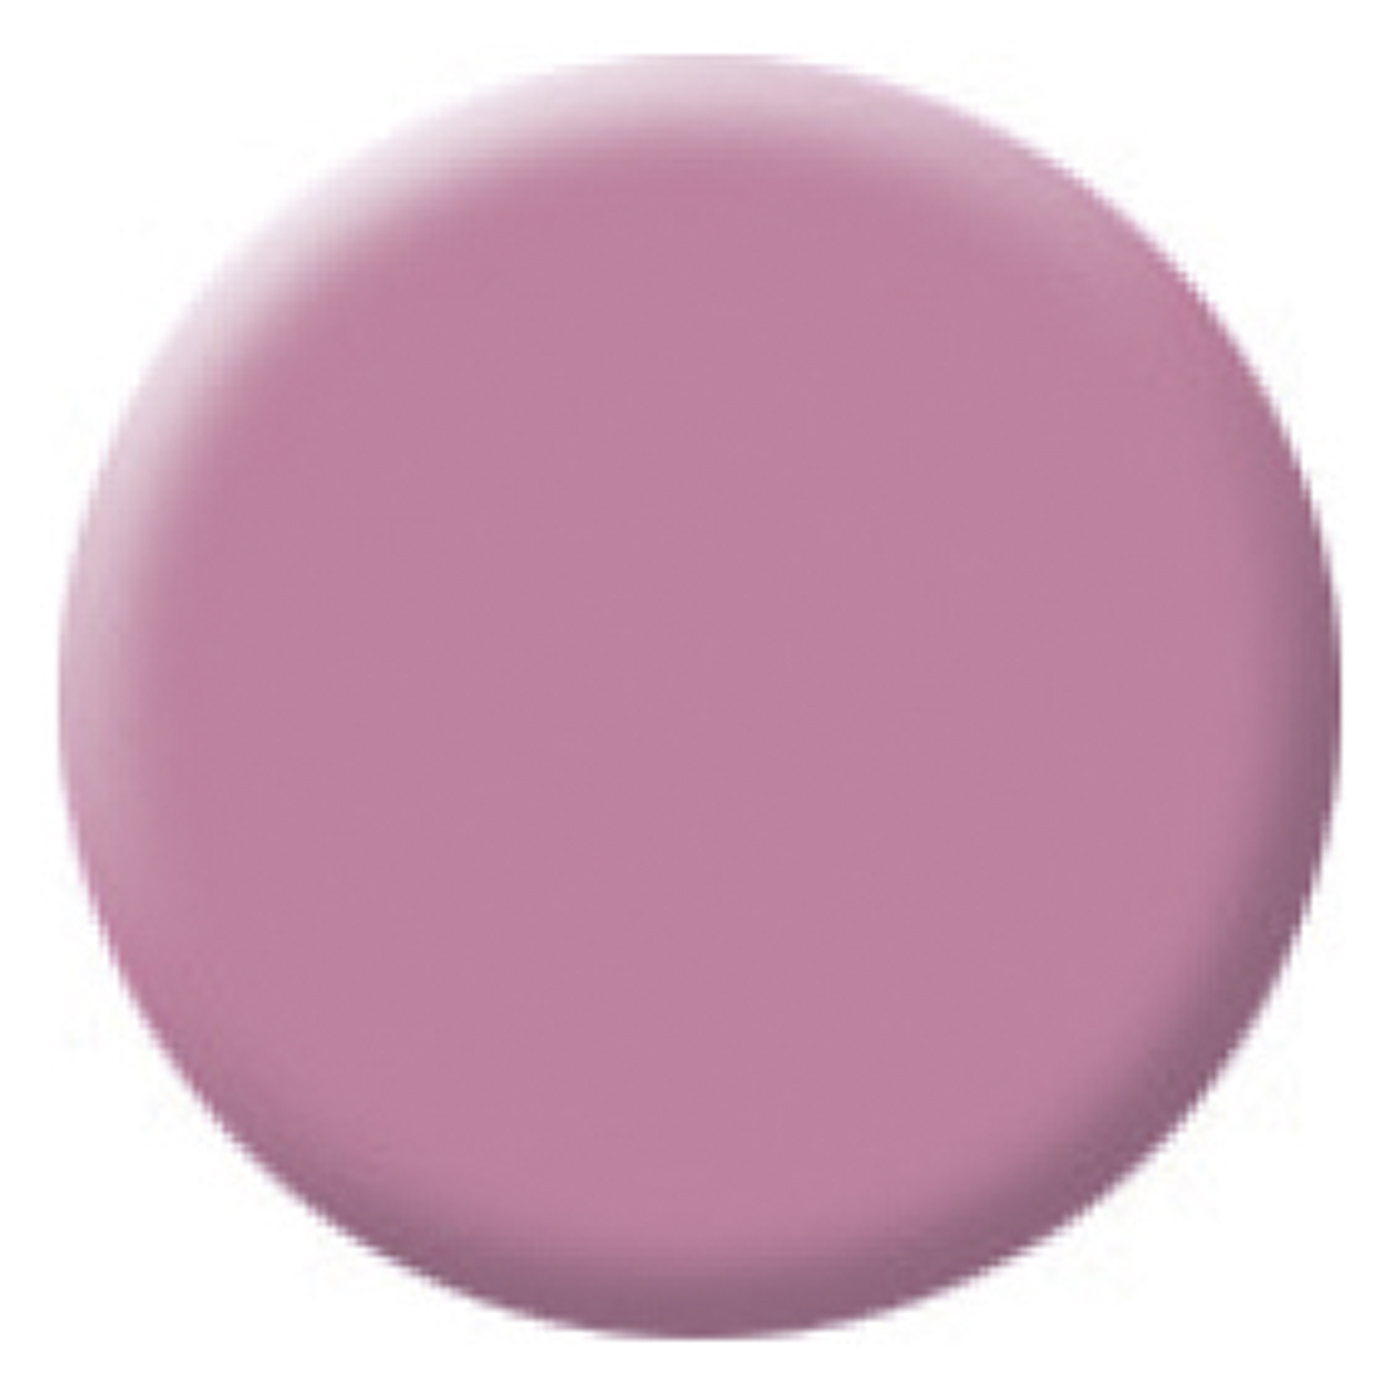 Colorit Trend opaque, raspberry cream - 5 g